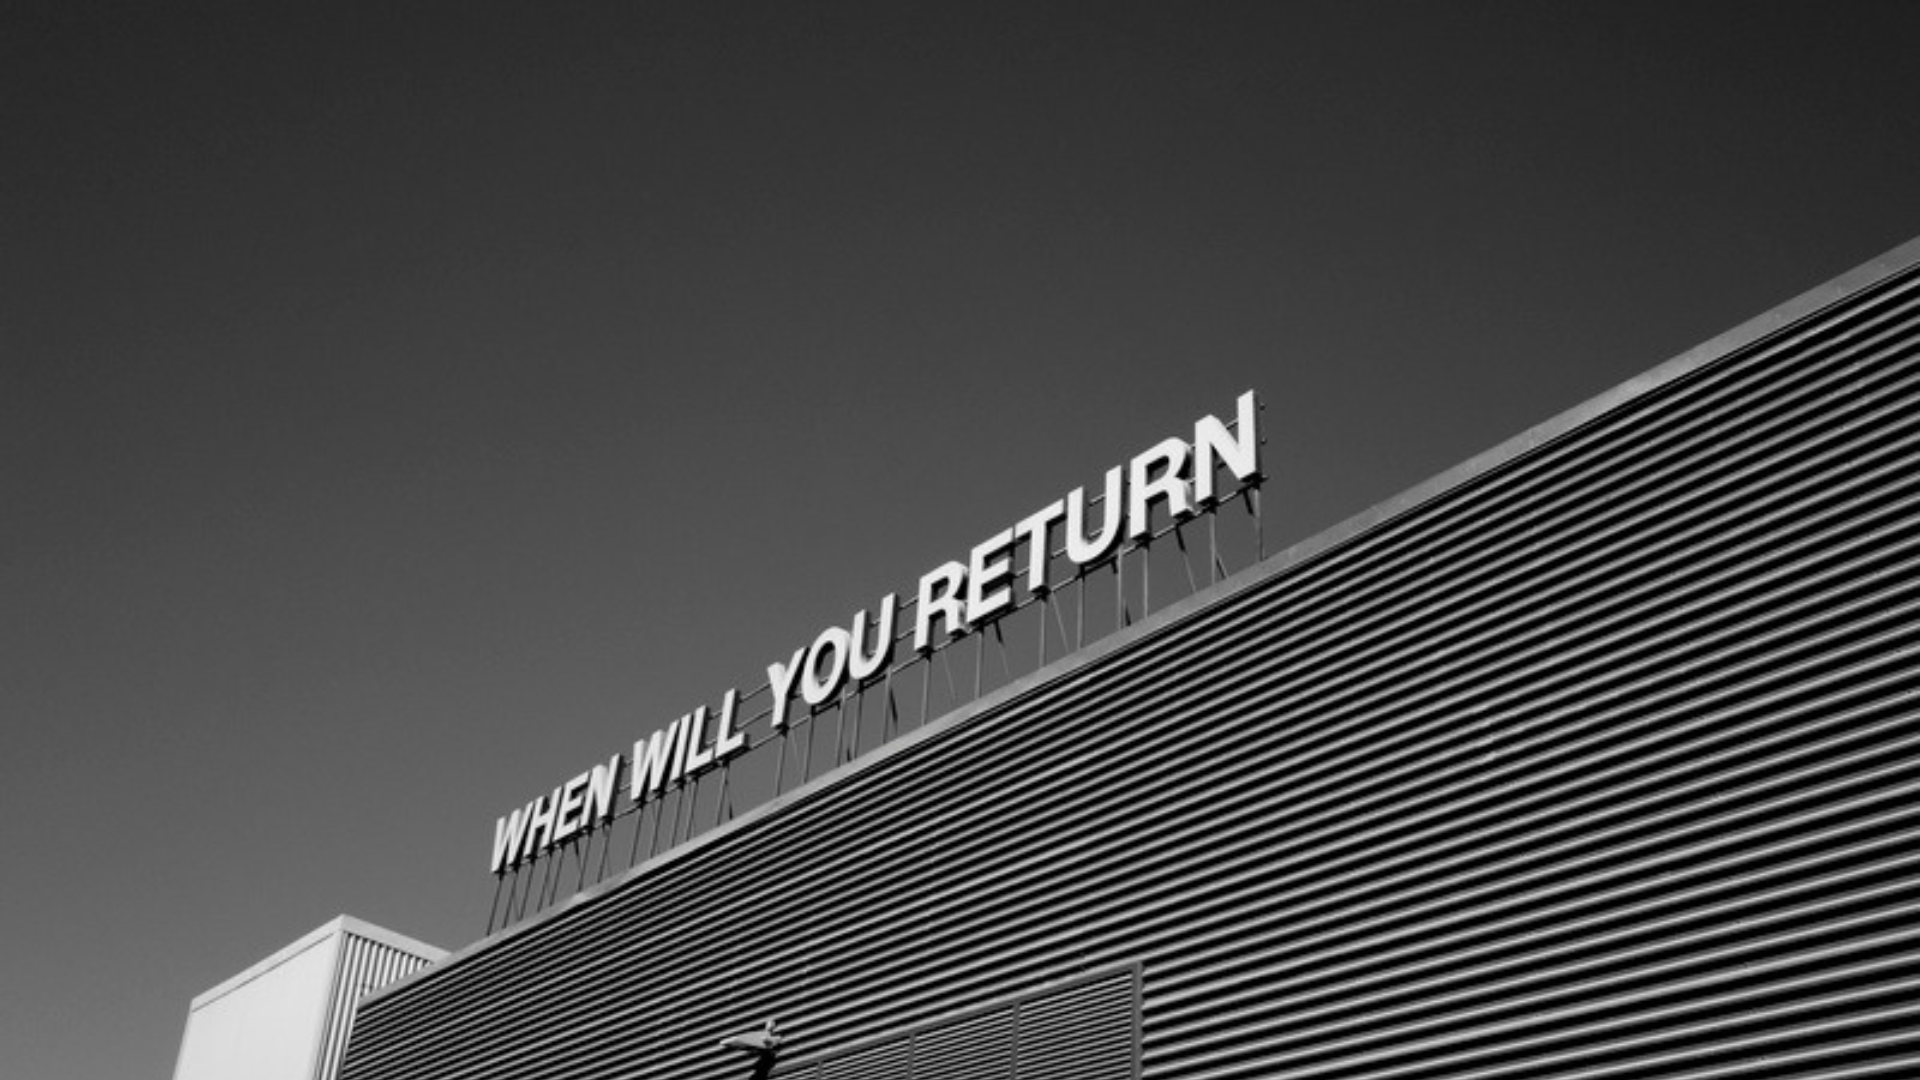 Beitragsbild zum Impuls: Ein Konzern und darüber ein Schild mit der Aufschrift: "When will you come back"